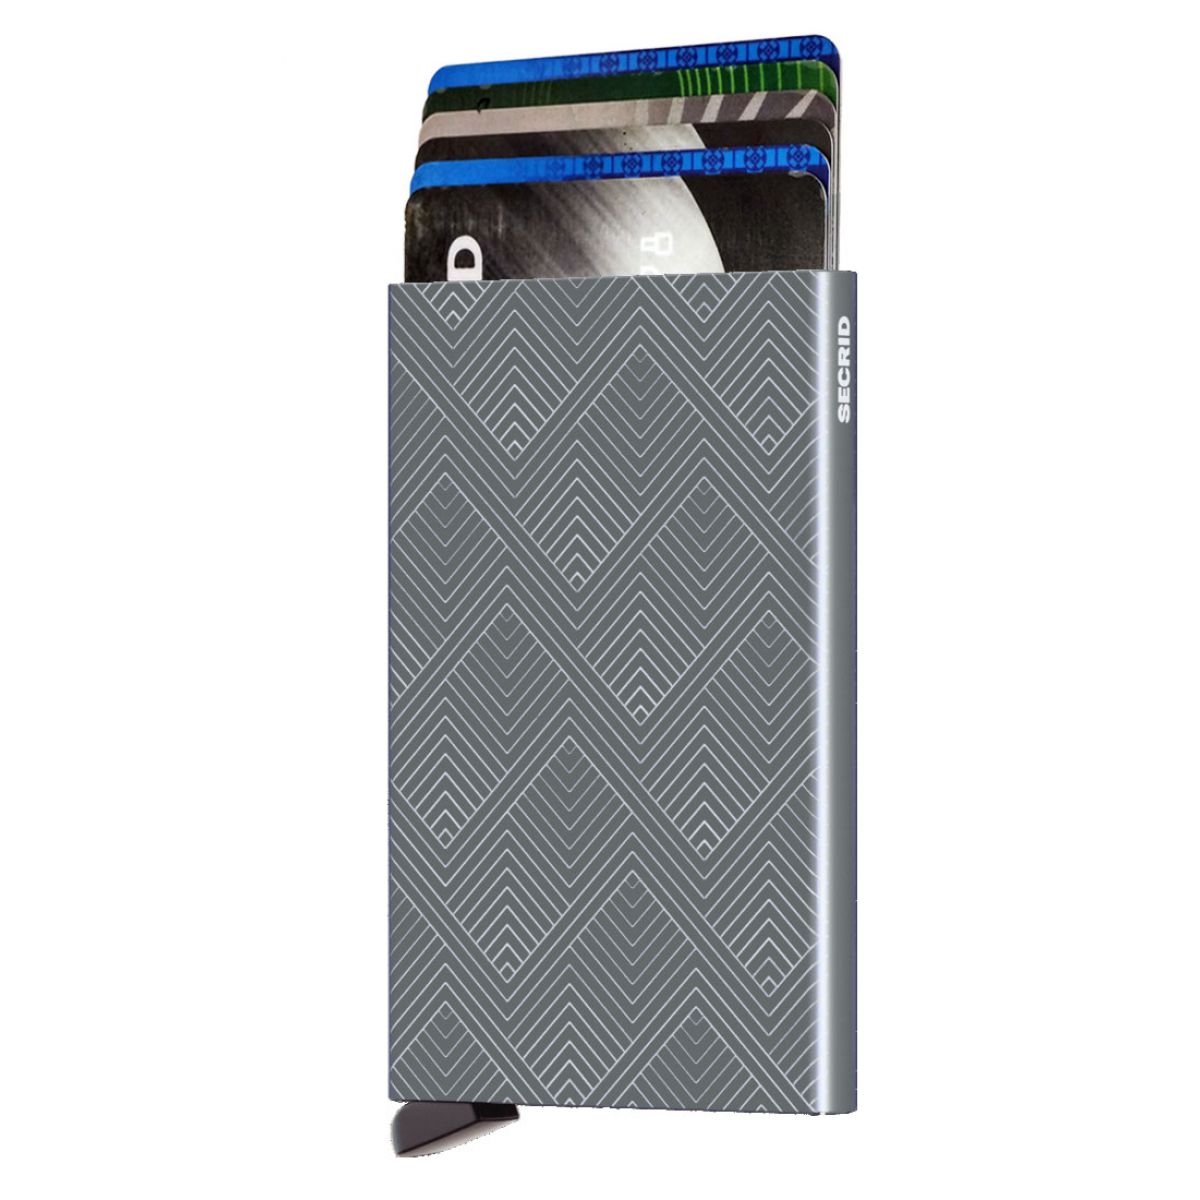 Secrid Card Protector Aluminium In Color Titanium Structure Cla Structure Titanium 24 75€